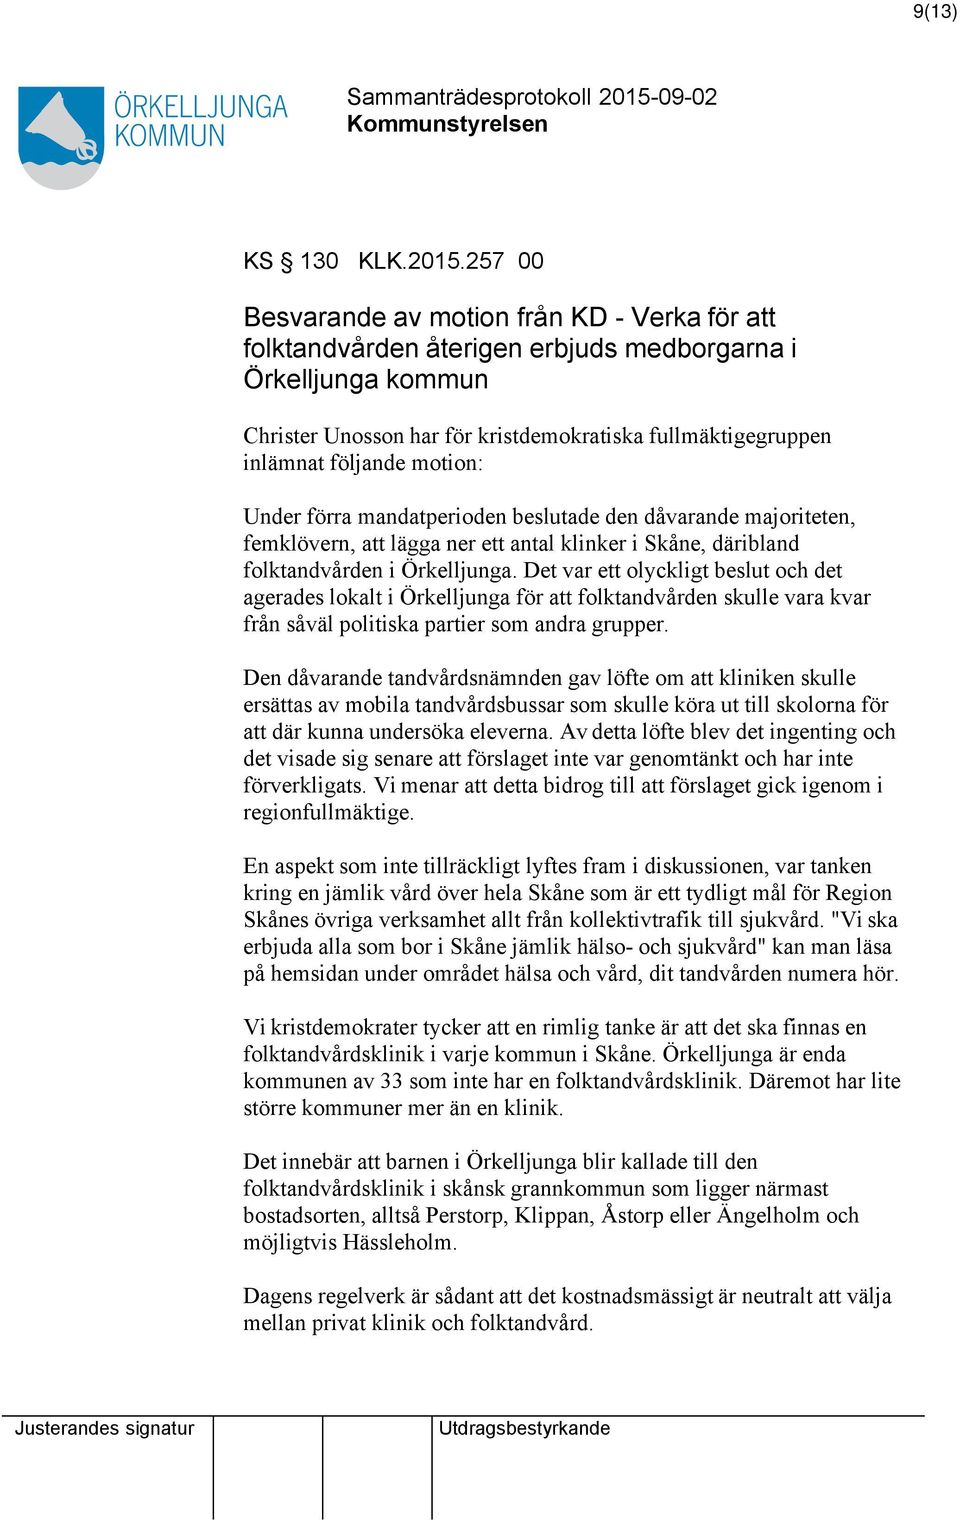 motion: Under förra mandatperioden beslutade den dåvarande majoriteten, femklövern, lägga ner ett antal klinker i Skåne, däribland folktandvården i Örkelljunga.